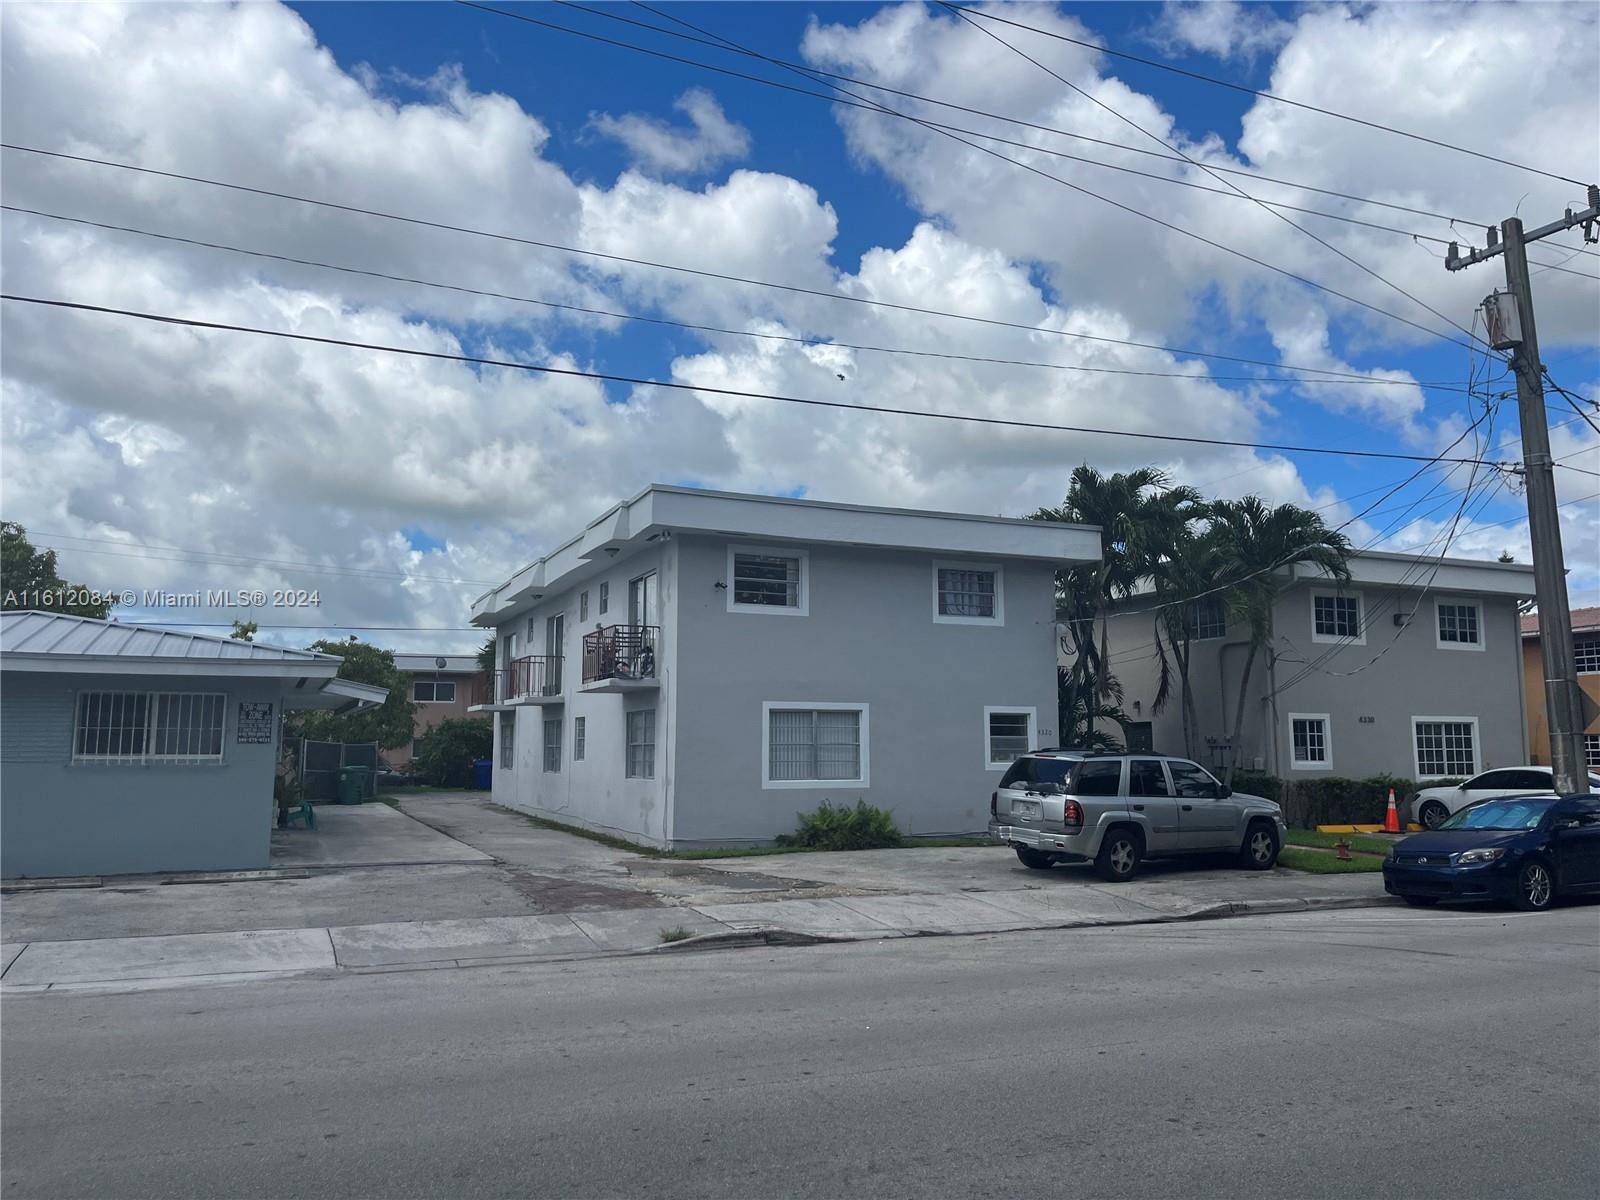 Rental Property at 4320 Nw 11th St St, Miami, Broward County, Florida -  - $950,000 MO.